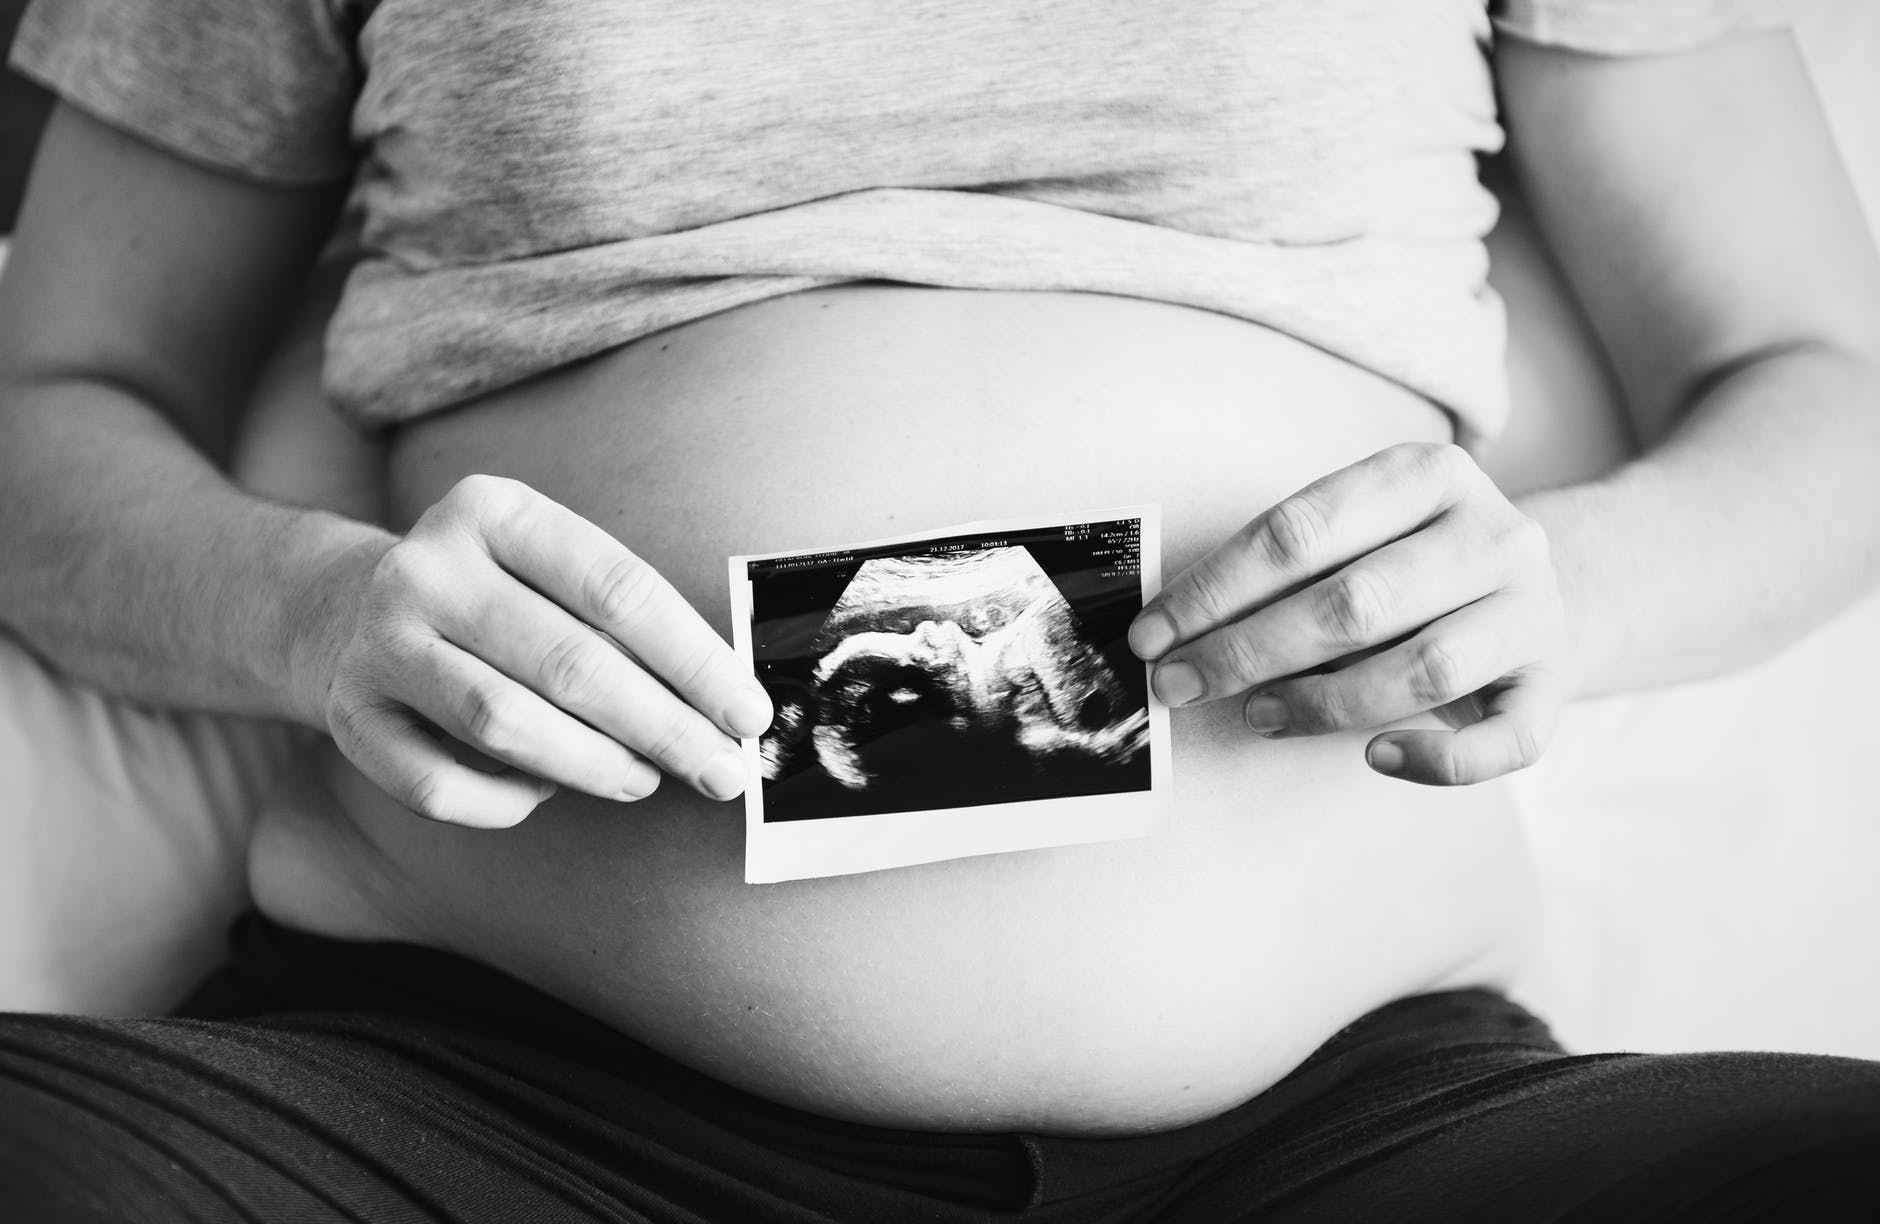 Πώς θα επιλέξεις γιατρό στην εγκυμοσύνη; Τα 5 βασικά κριτήρια!